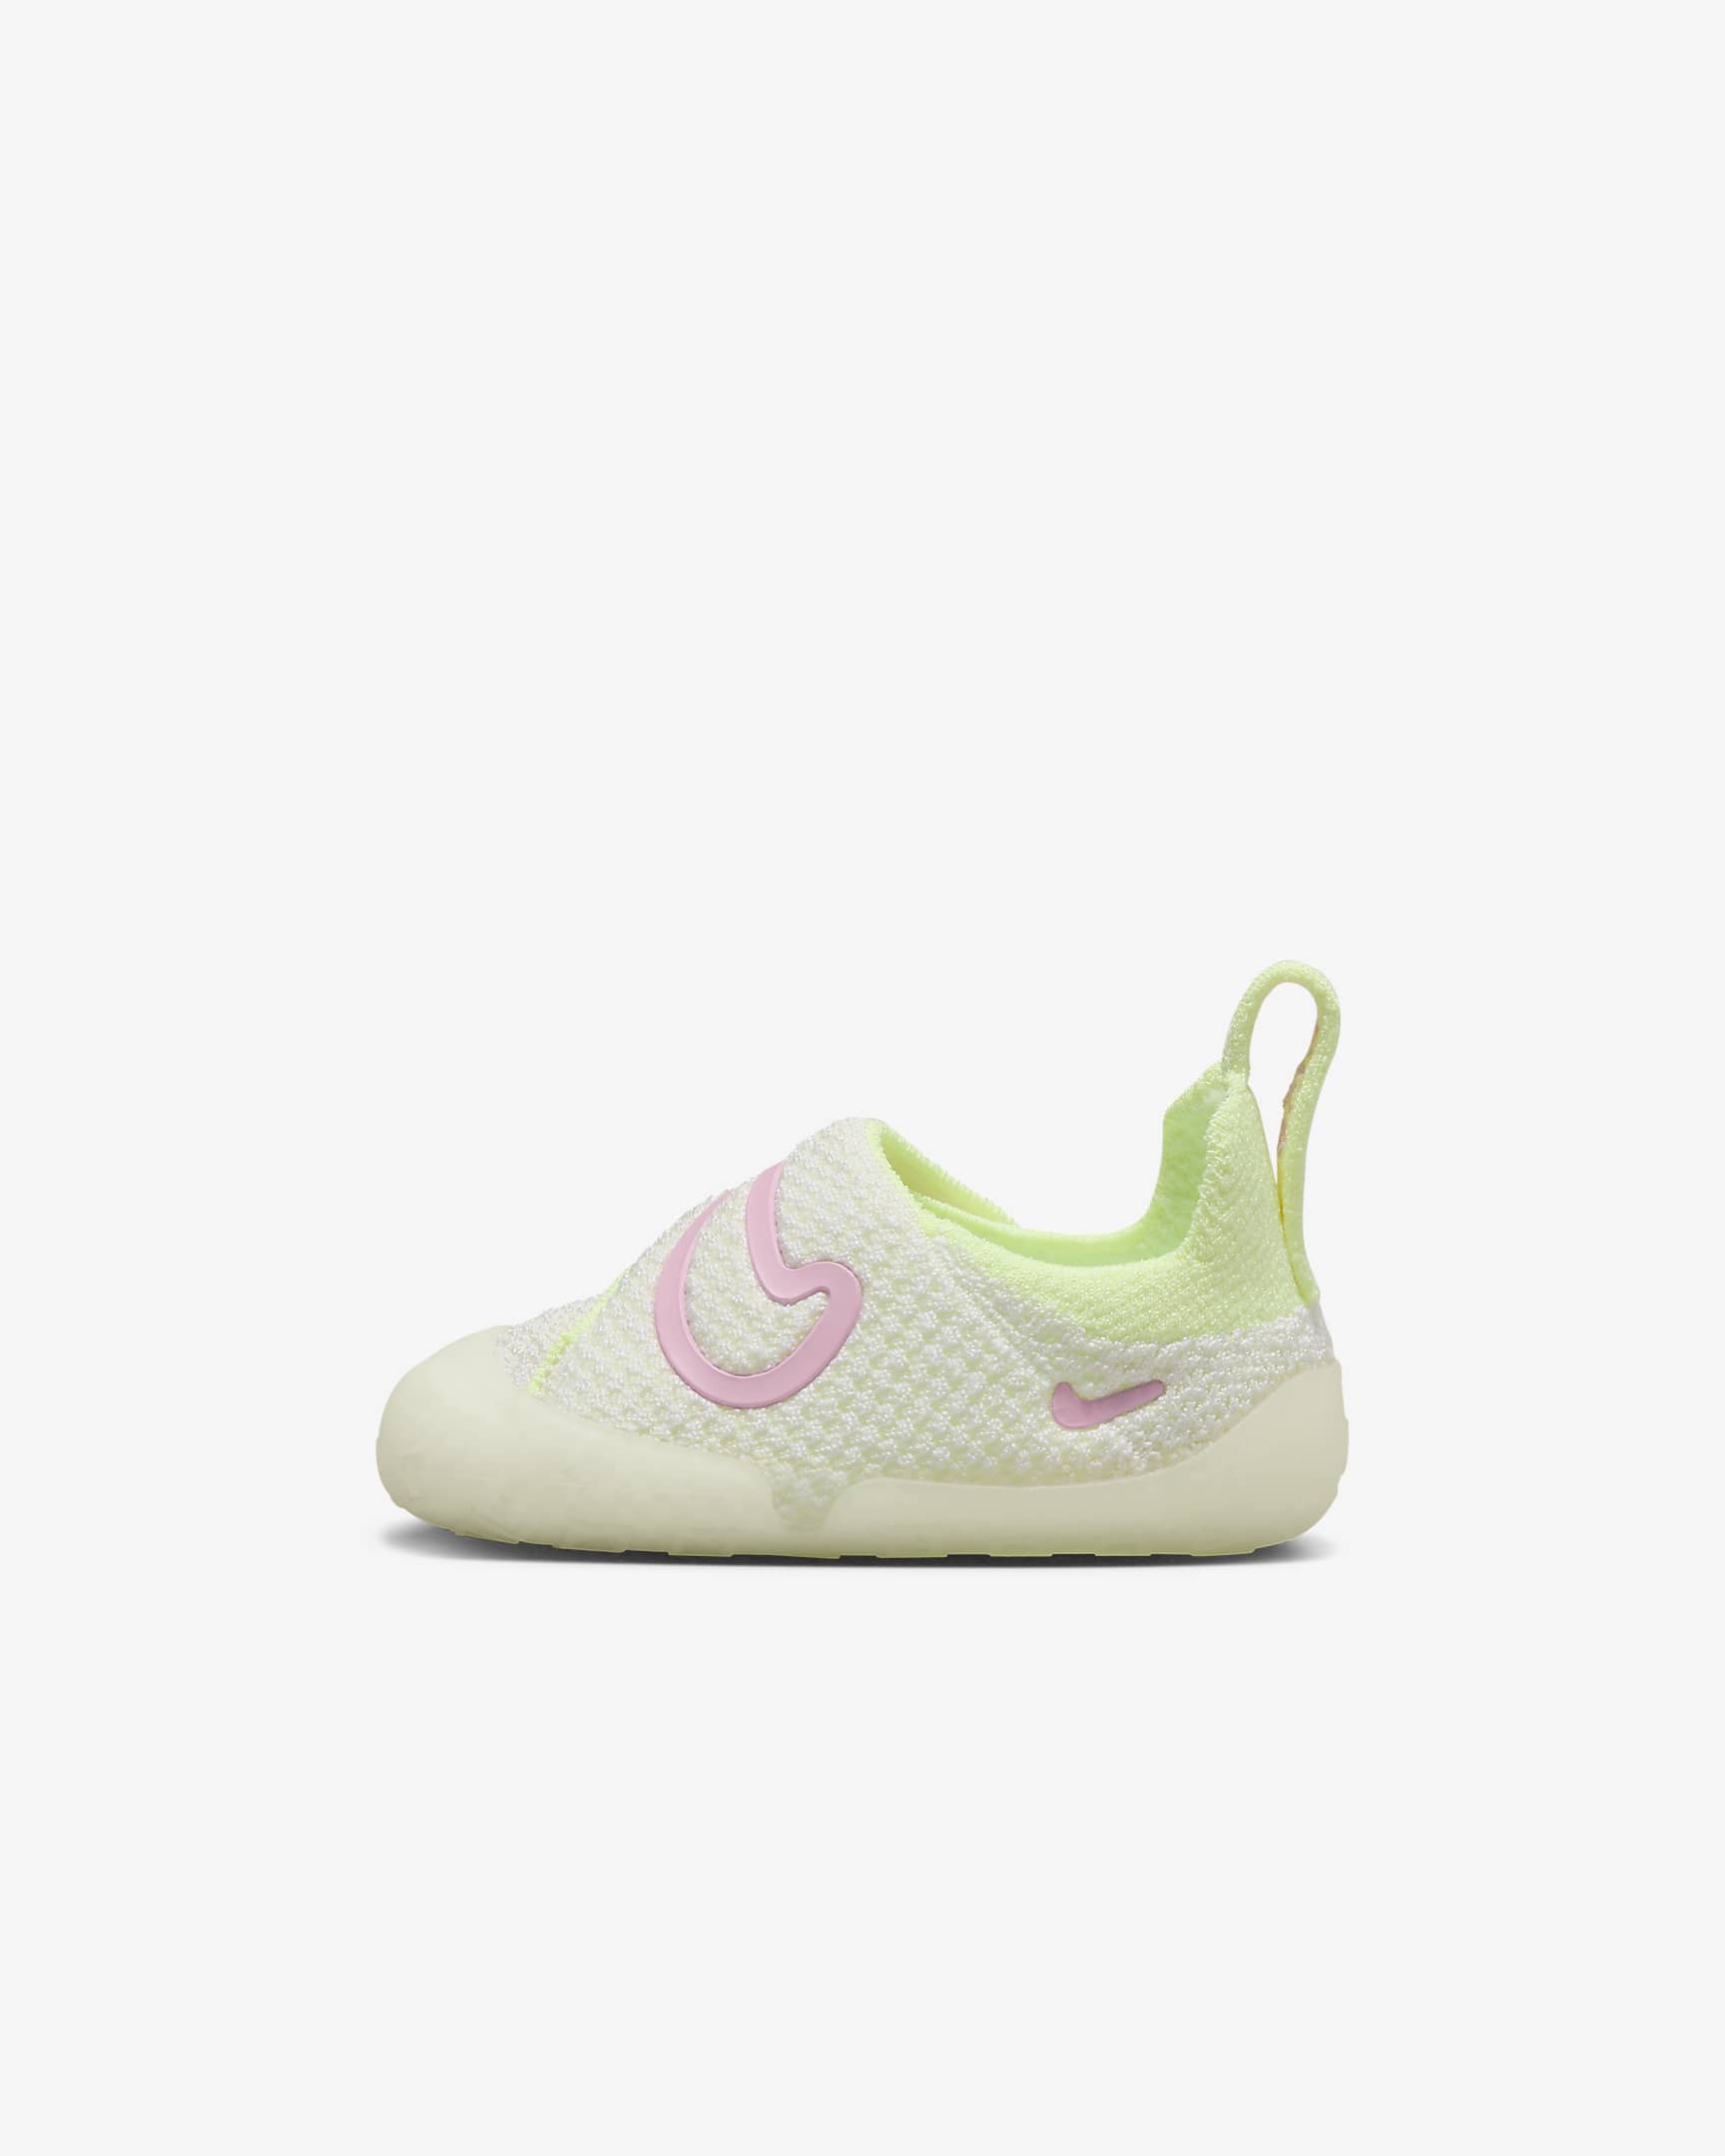 Chaussure Nike Swoosh 1 pour bébé et tout-petit - Coconut Milk/Blanc/Barely Volt/Pink Rise